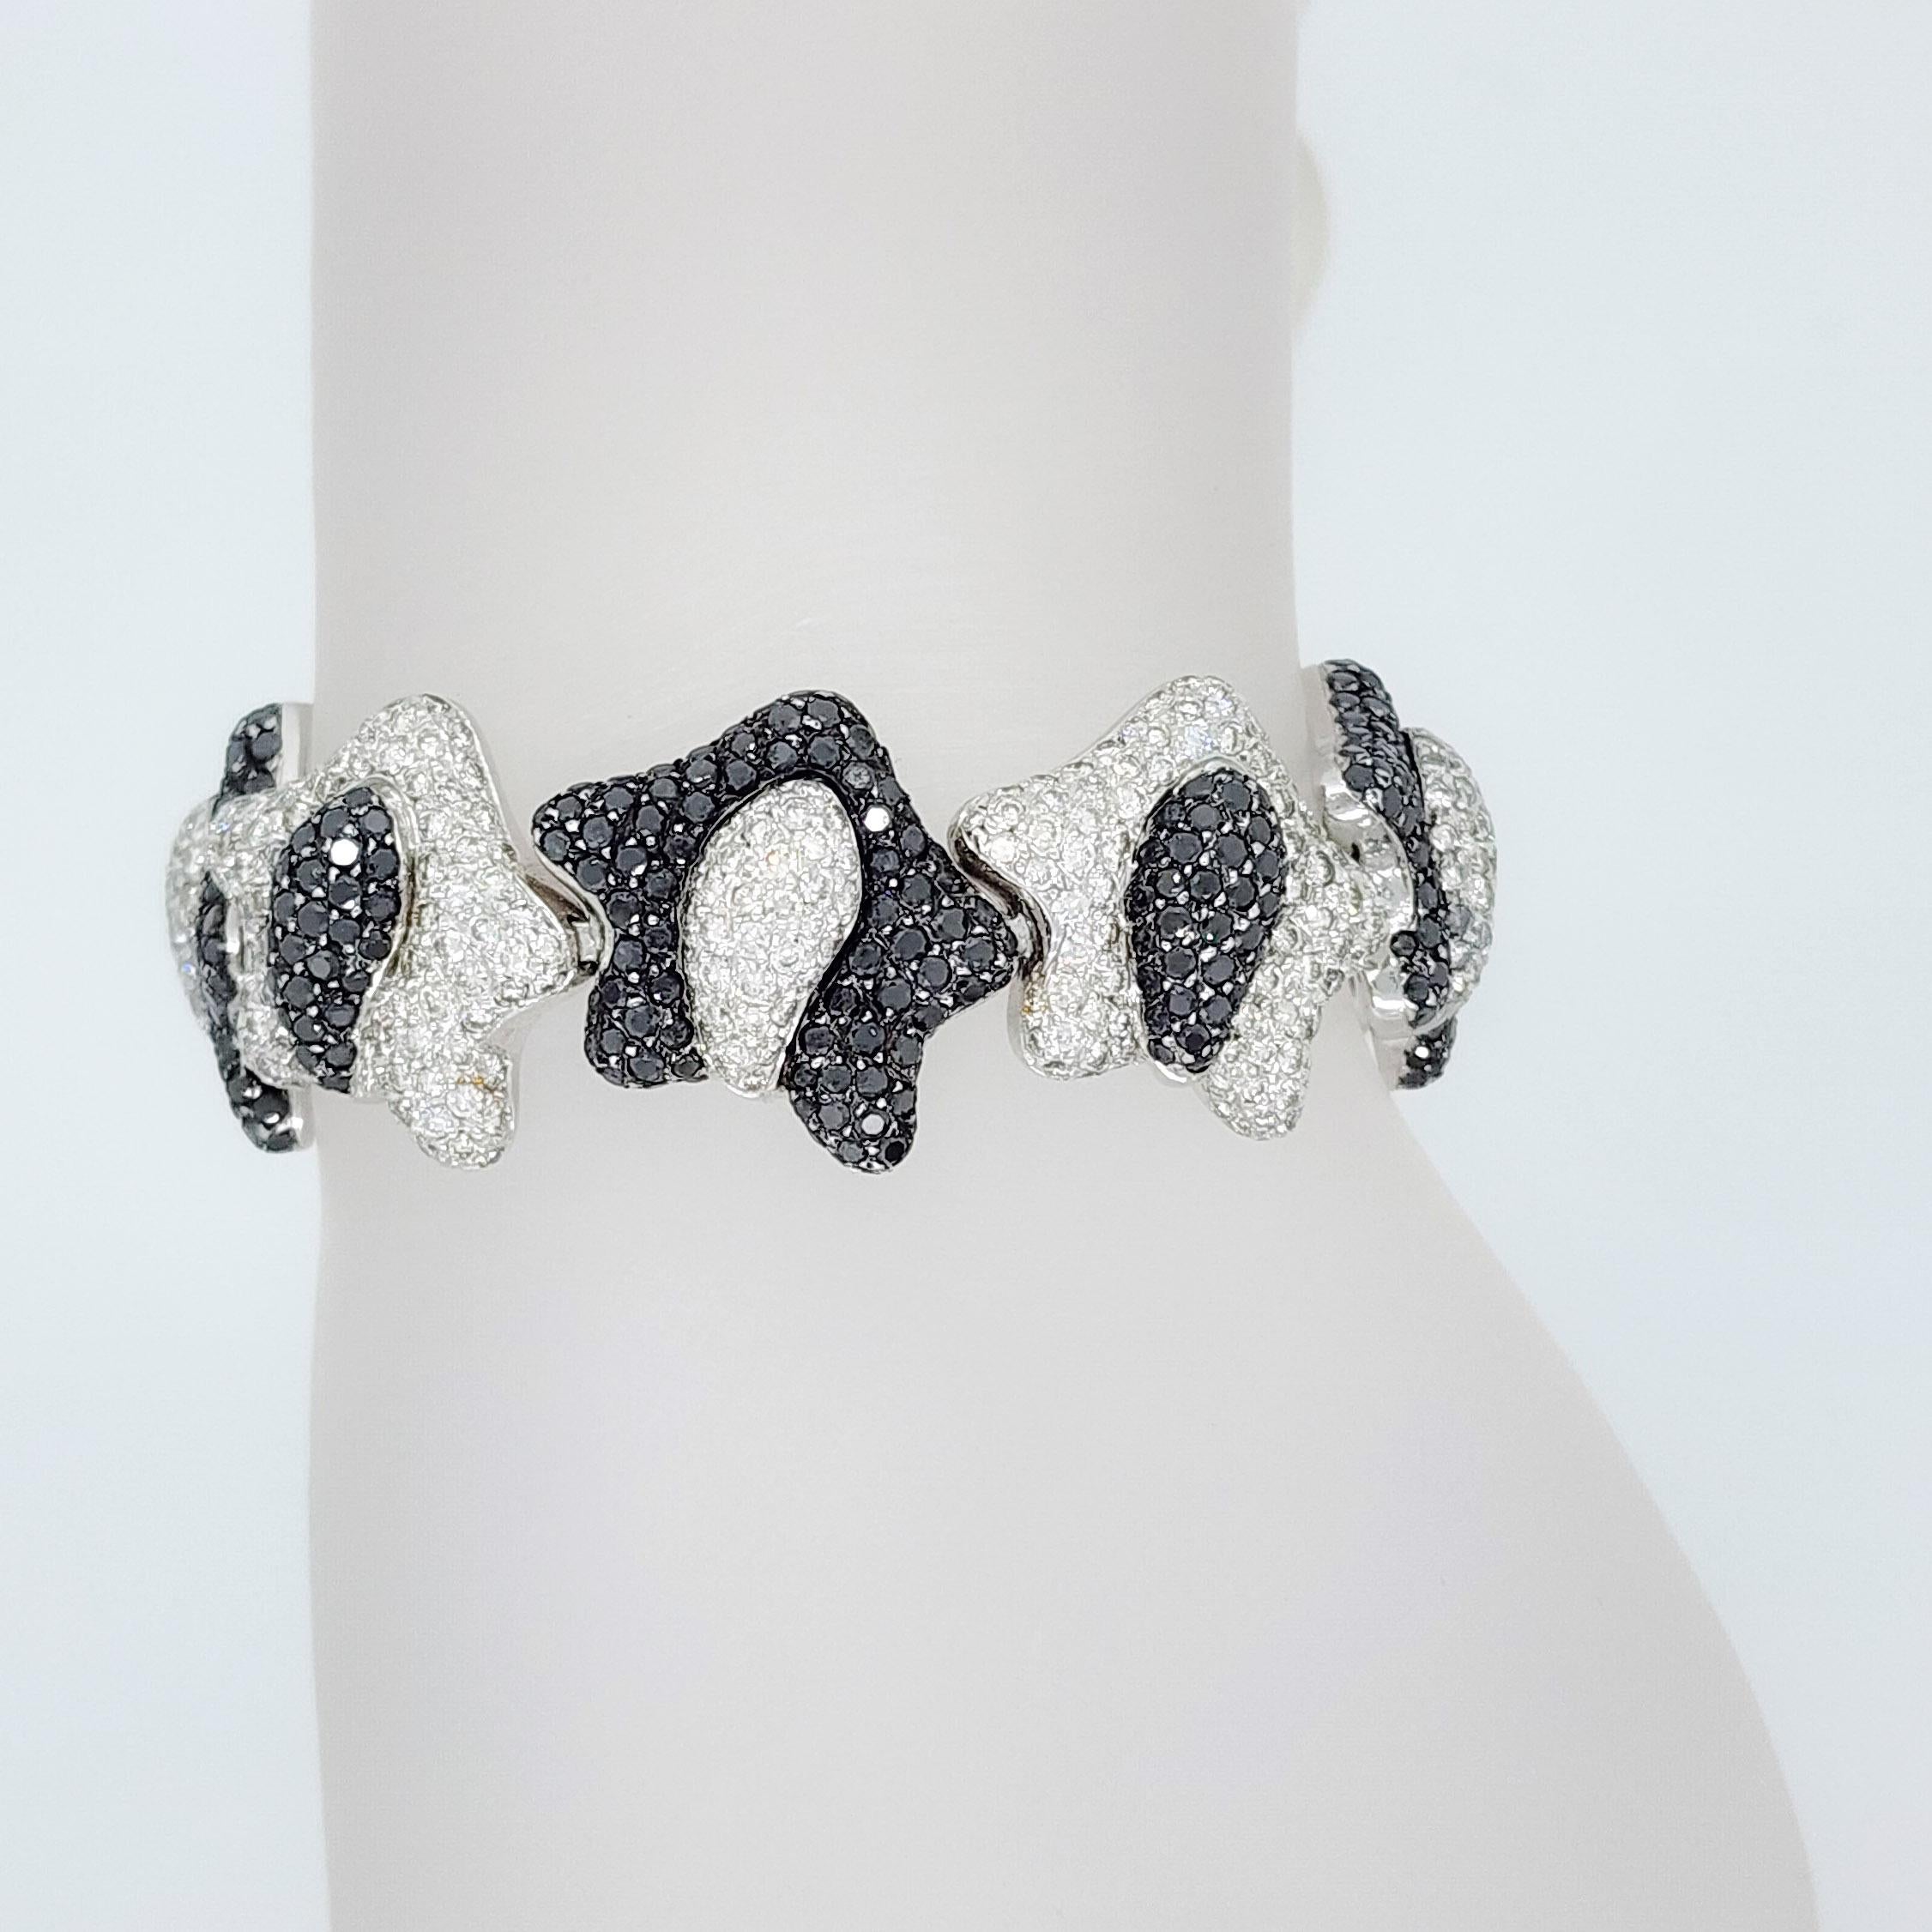 Wunderschöner runder weißer Diamant und schwarzer Diamant in diesem lustigen Design-Armband gefasst.  Handgefertigt aus 18k Weißgold.  Flexibel und mit viel Liebe zum Detail hergestellt. Die Länge beträgt 7,25